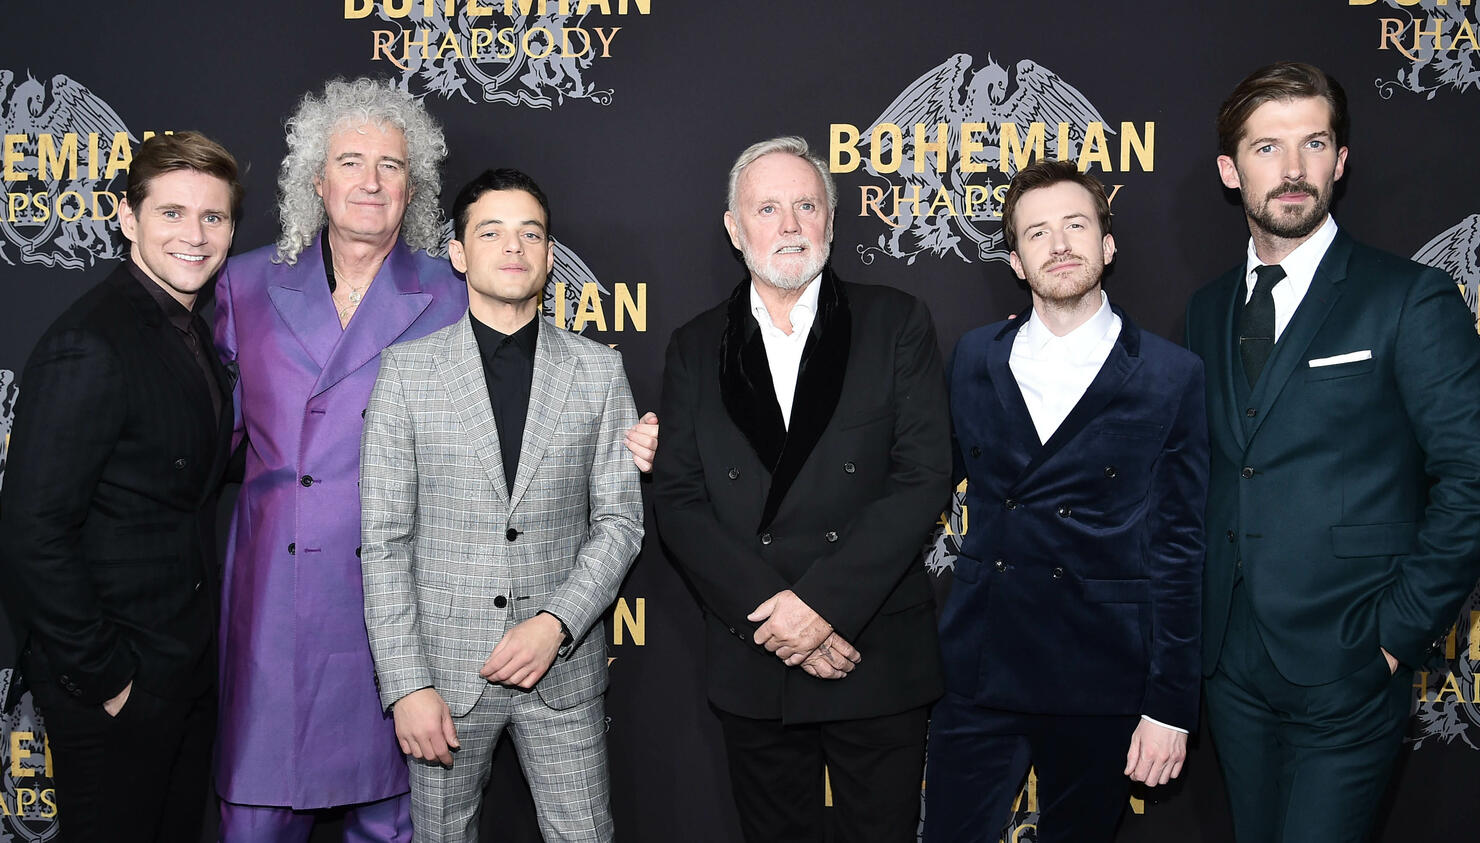 Queen's 'Bohemian Rhapsody' Biopic Earns $50 Million in Opening Weekend